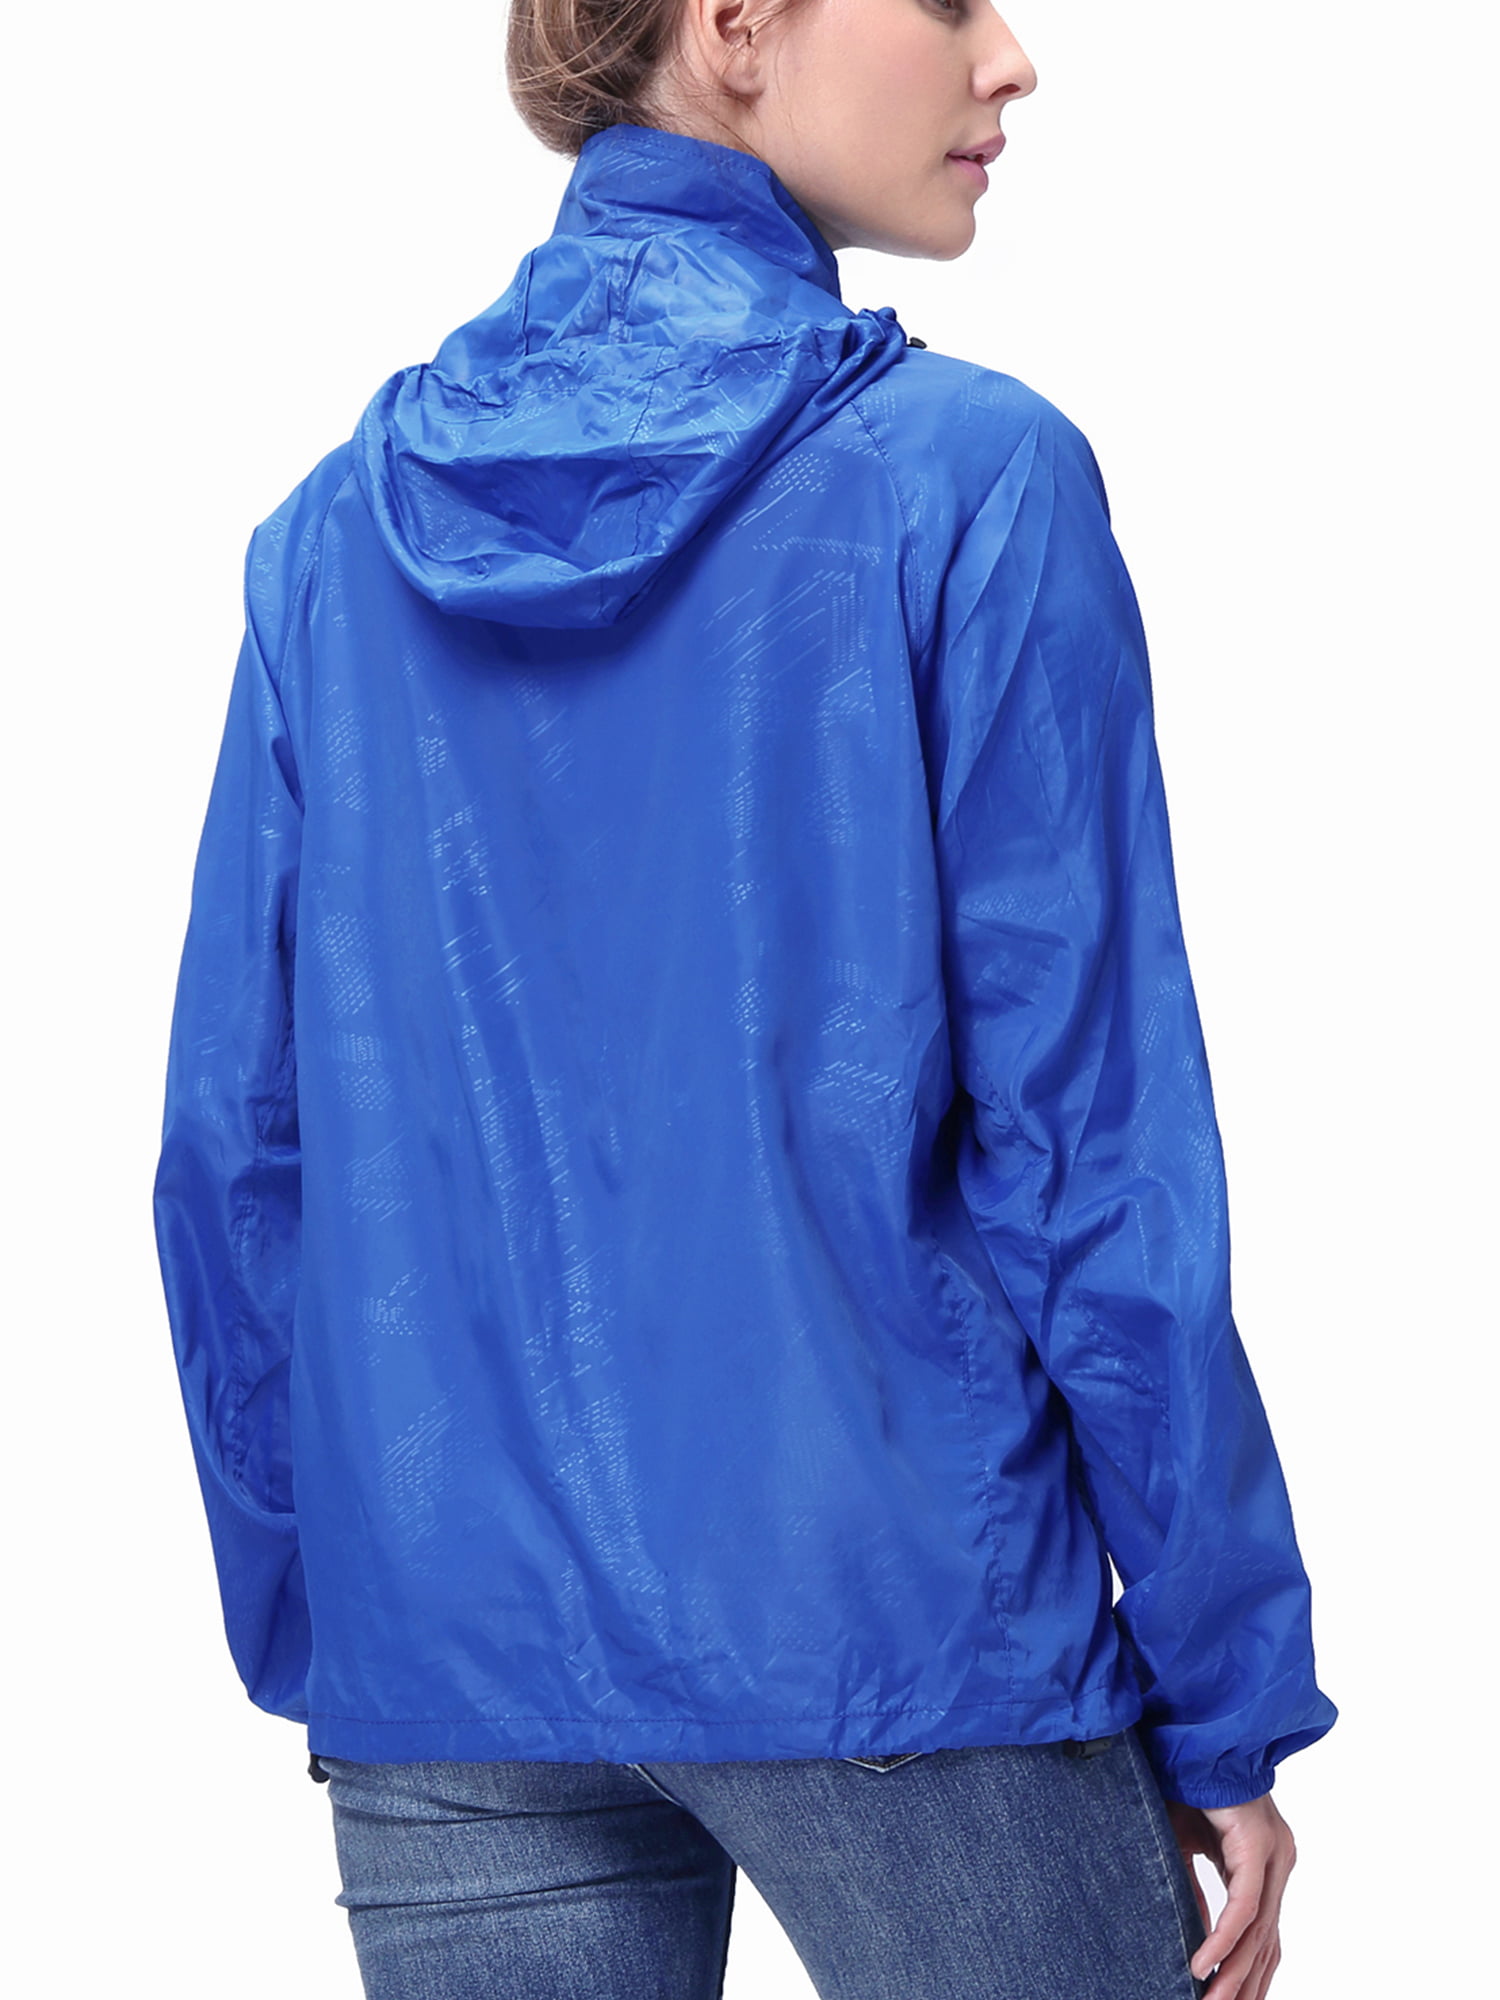 Bifast Womens Summer Rain Jacket Hooded Windproof Waterproof Outdoor Sports Functional Coat